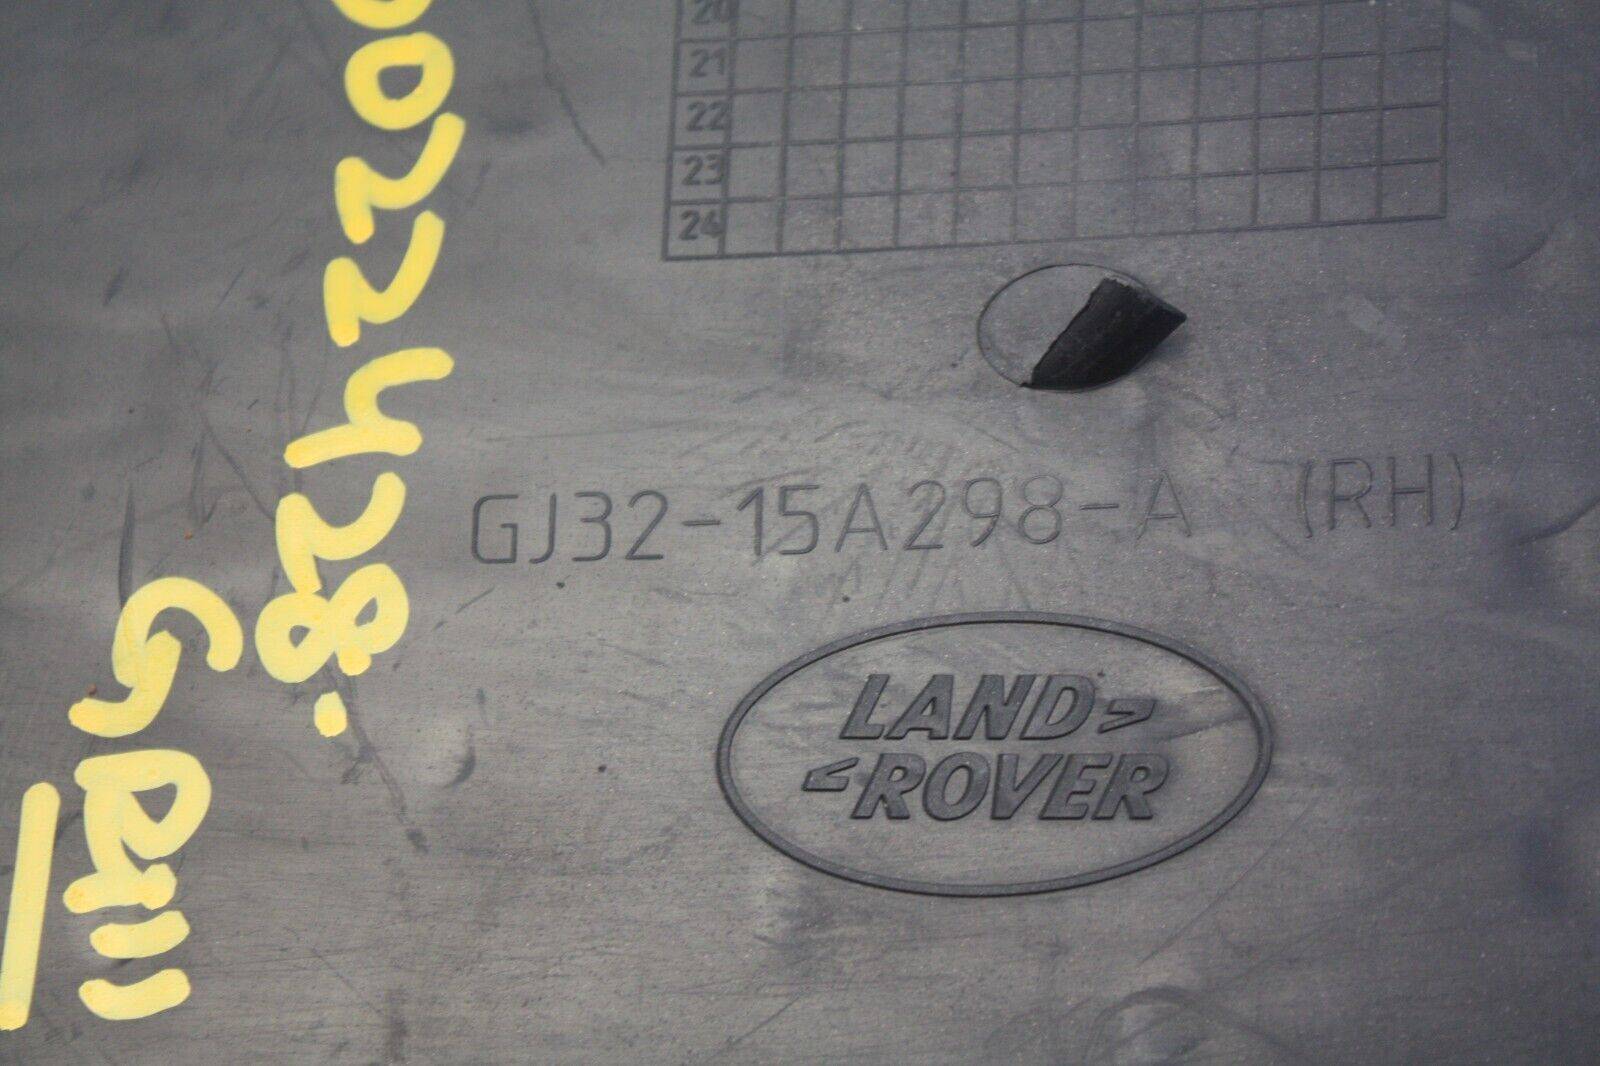 Range-Rover-Evoque-Front-Bumper-Right-Grill-2015-TO-2018-GJ32-15A298-A-Genuine-176304088742-9